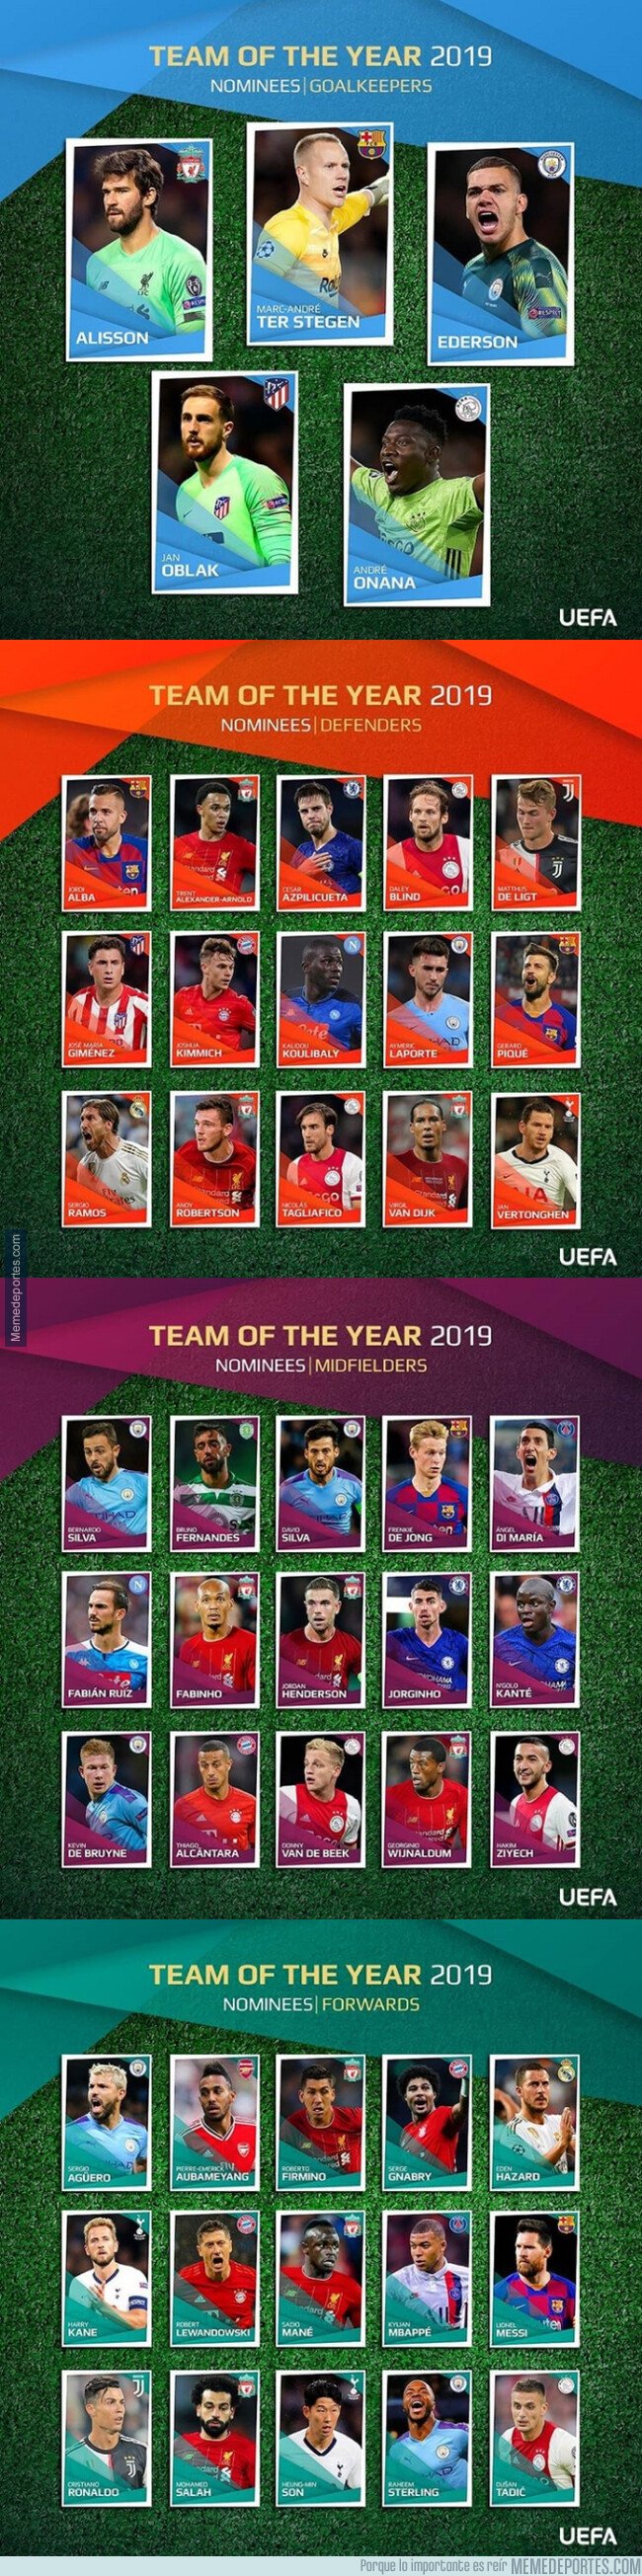 1092053 - Los nominados al equipo del año de la UEFA. ¿Te falta o te sobra alguno?